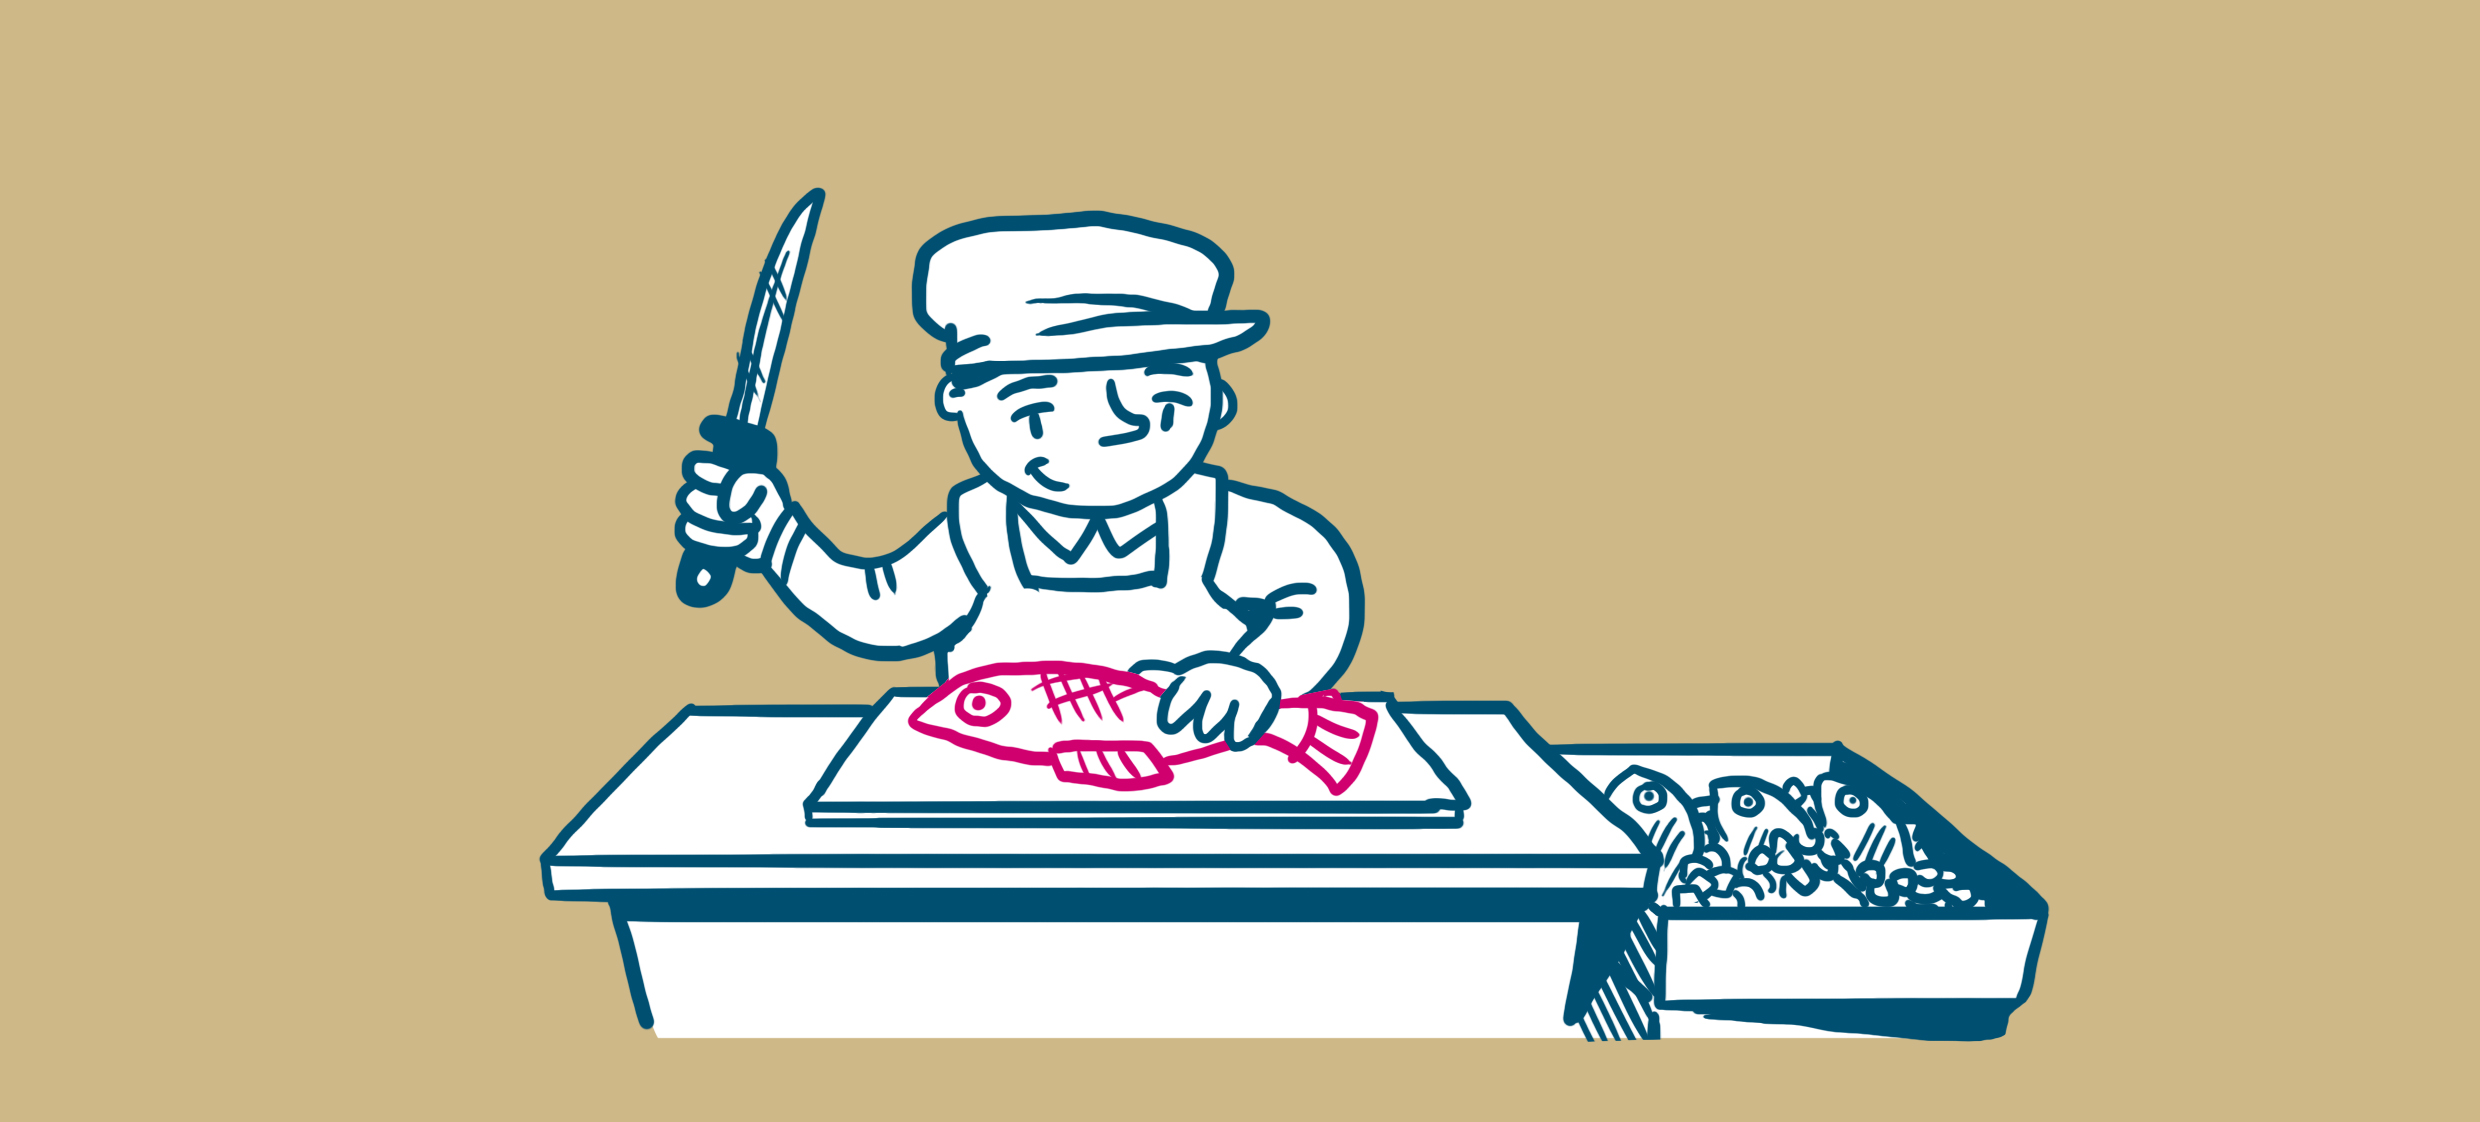 Työntekijä aloittamassa raa´an kalan käsittelyä veitsen kanssa